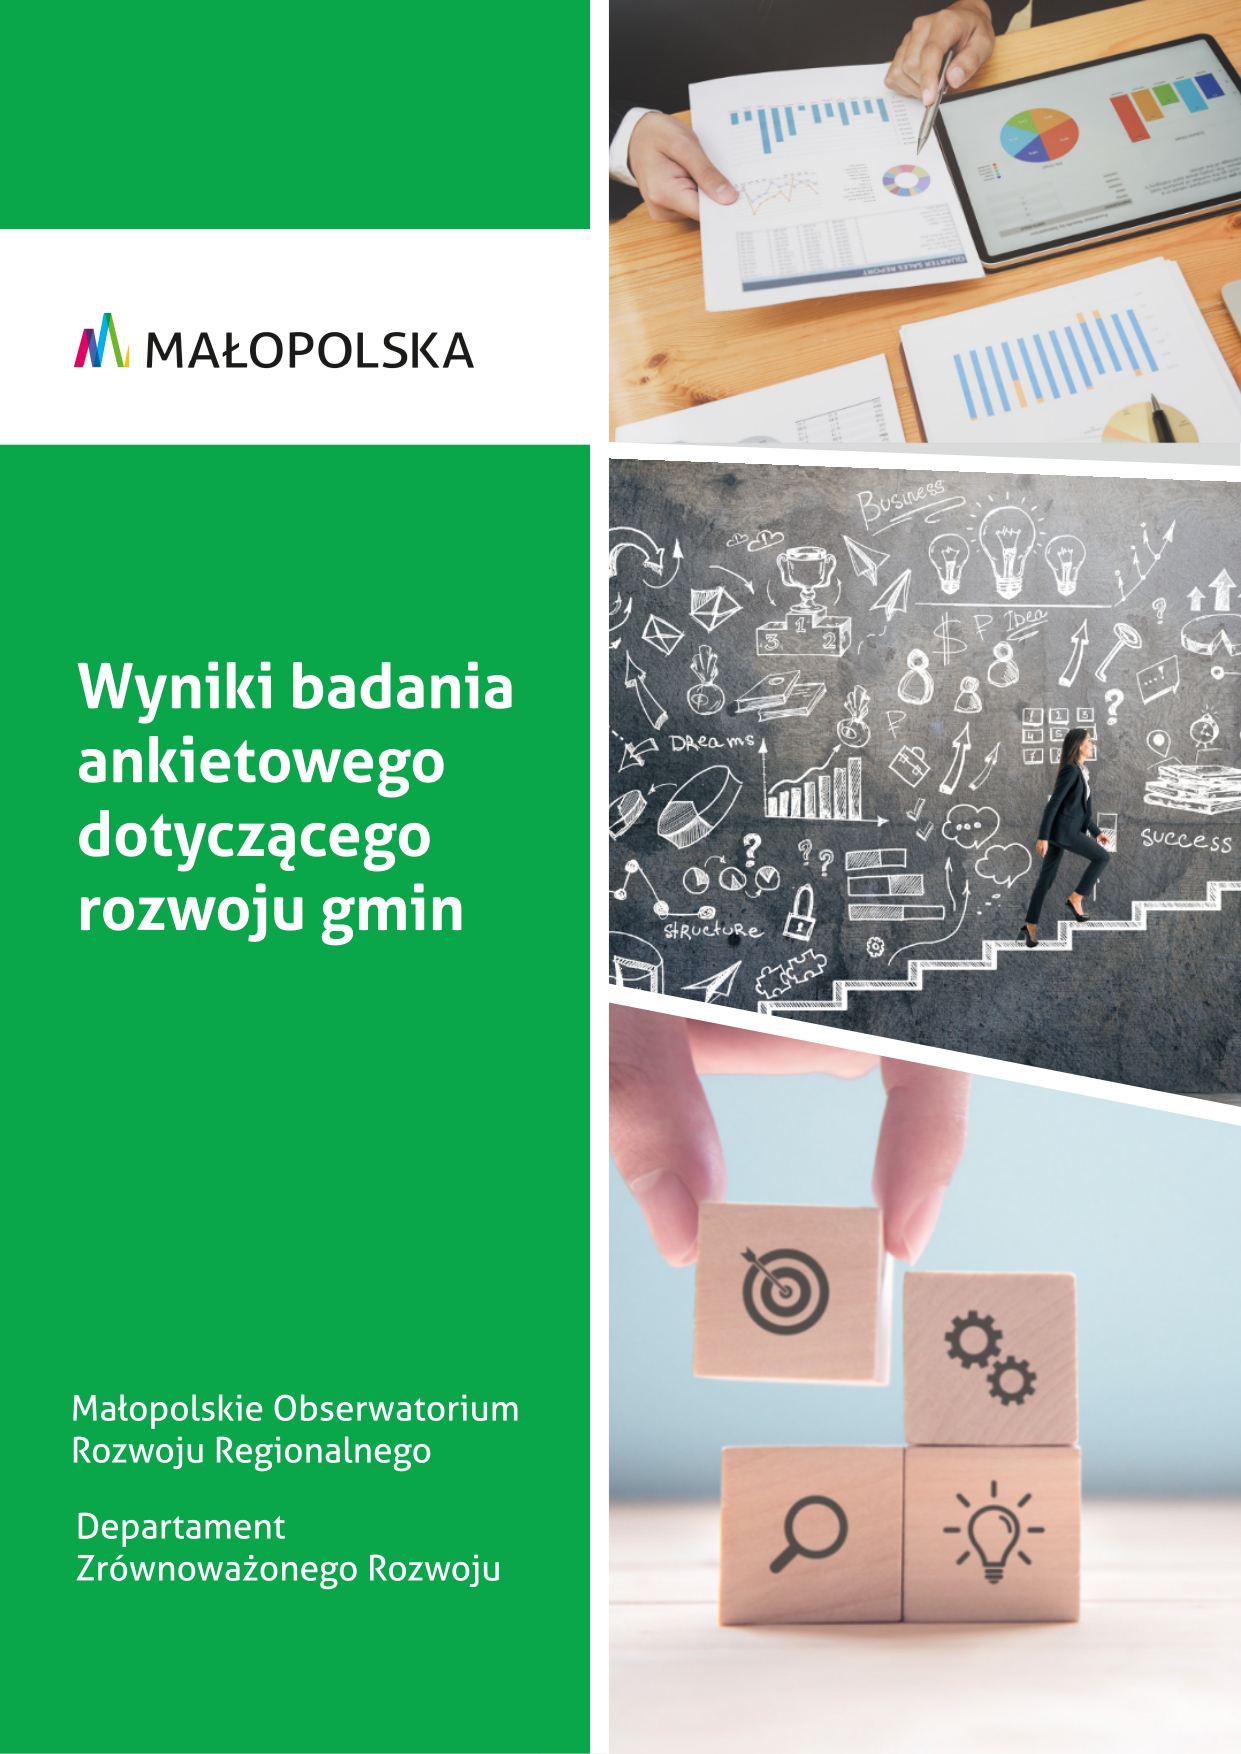 Rozwój gmin w Małopolsce - wyniki badania ankietowego